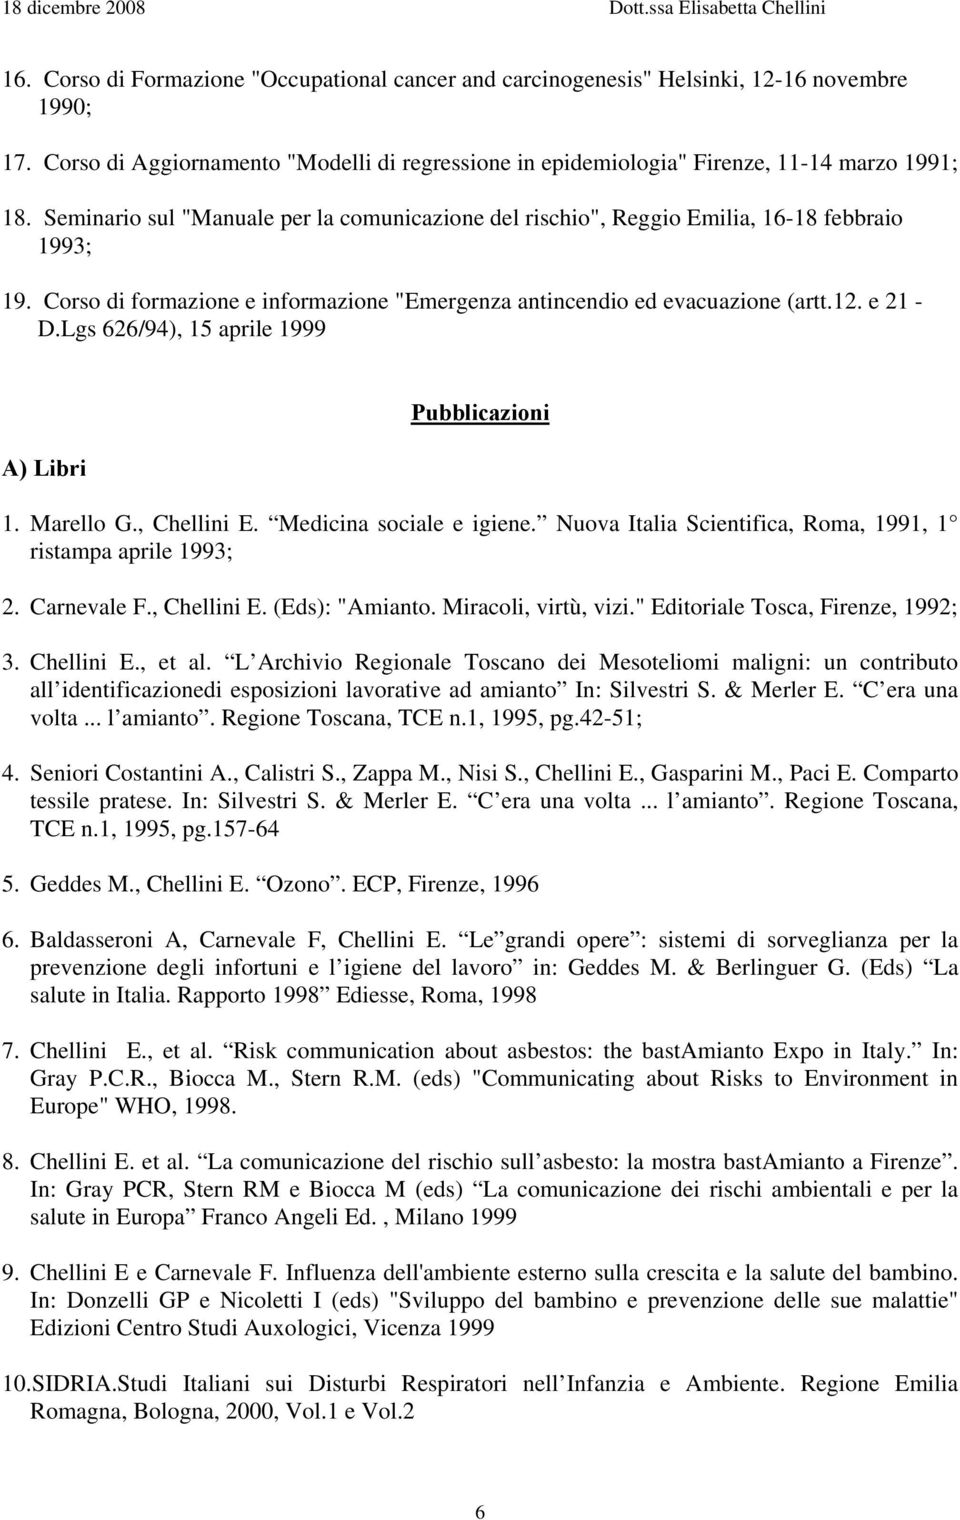 Lgs 626/94), 15 aprile 1999 A) Libri Pubblicazioni 1. Marello G., Chellini E. Medicina sociale e igiene. Nuova Italia Scientifica, Roma, 1991, 1 ristampa aprile 1993; 2. Carnevale F., Chellini E. (Eds): "Amianto.